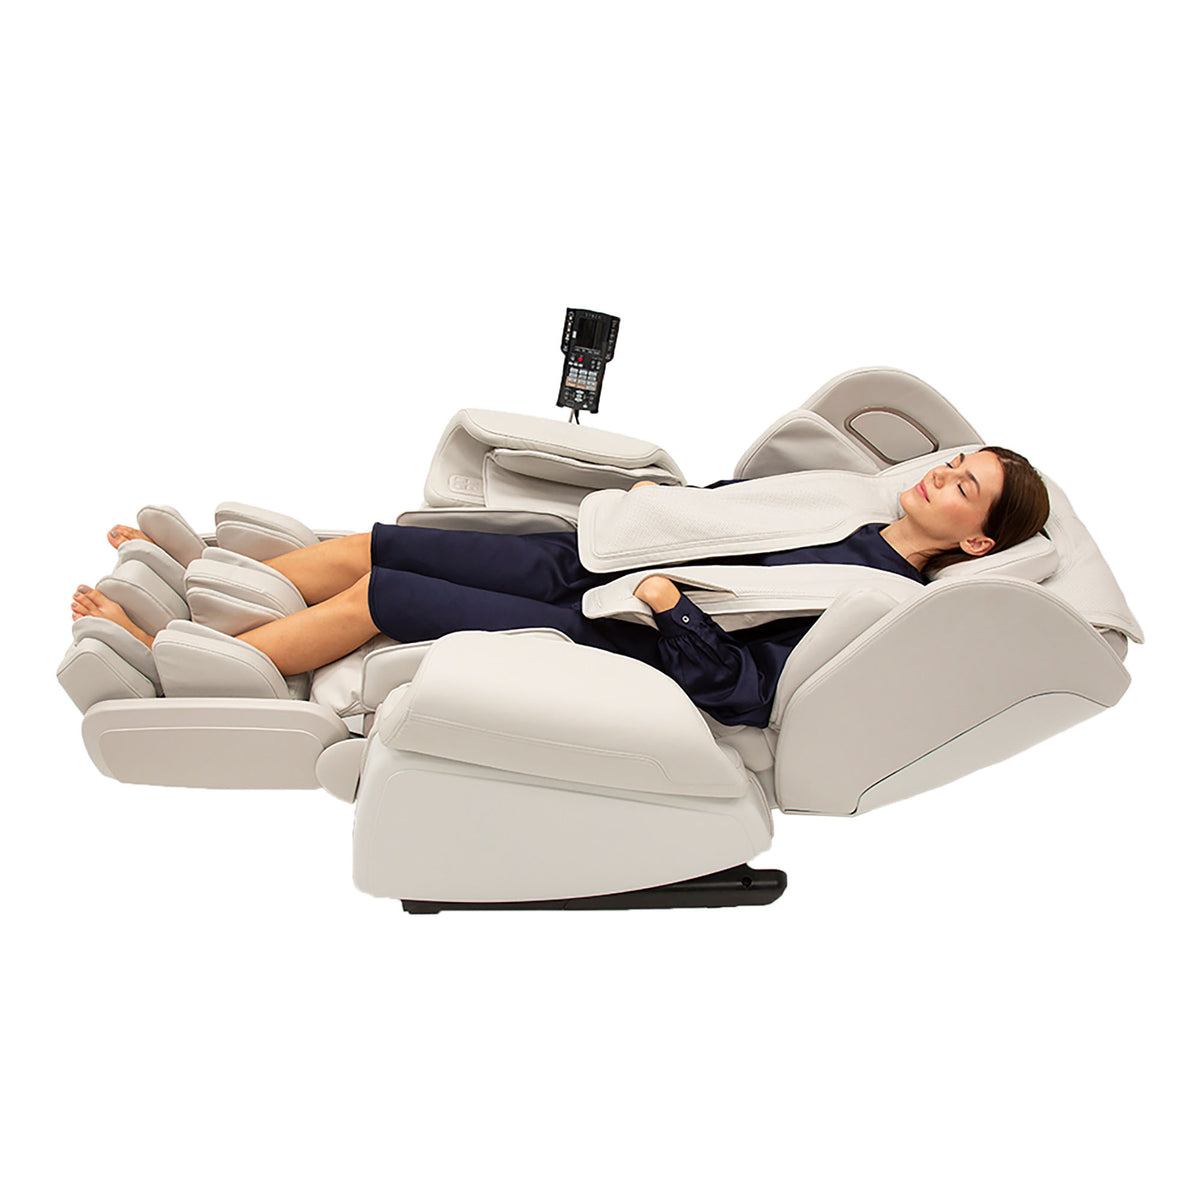 Synca Kagra Premium Massage Chair